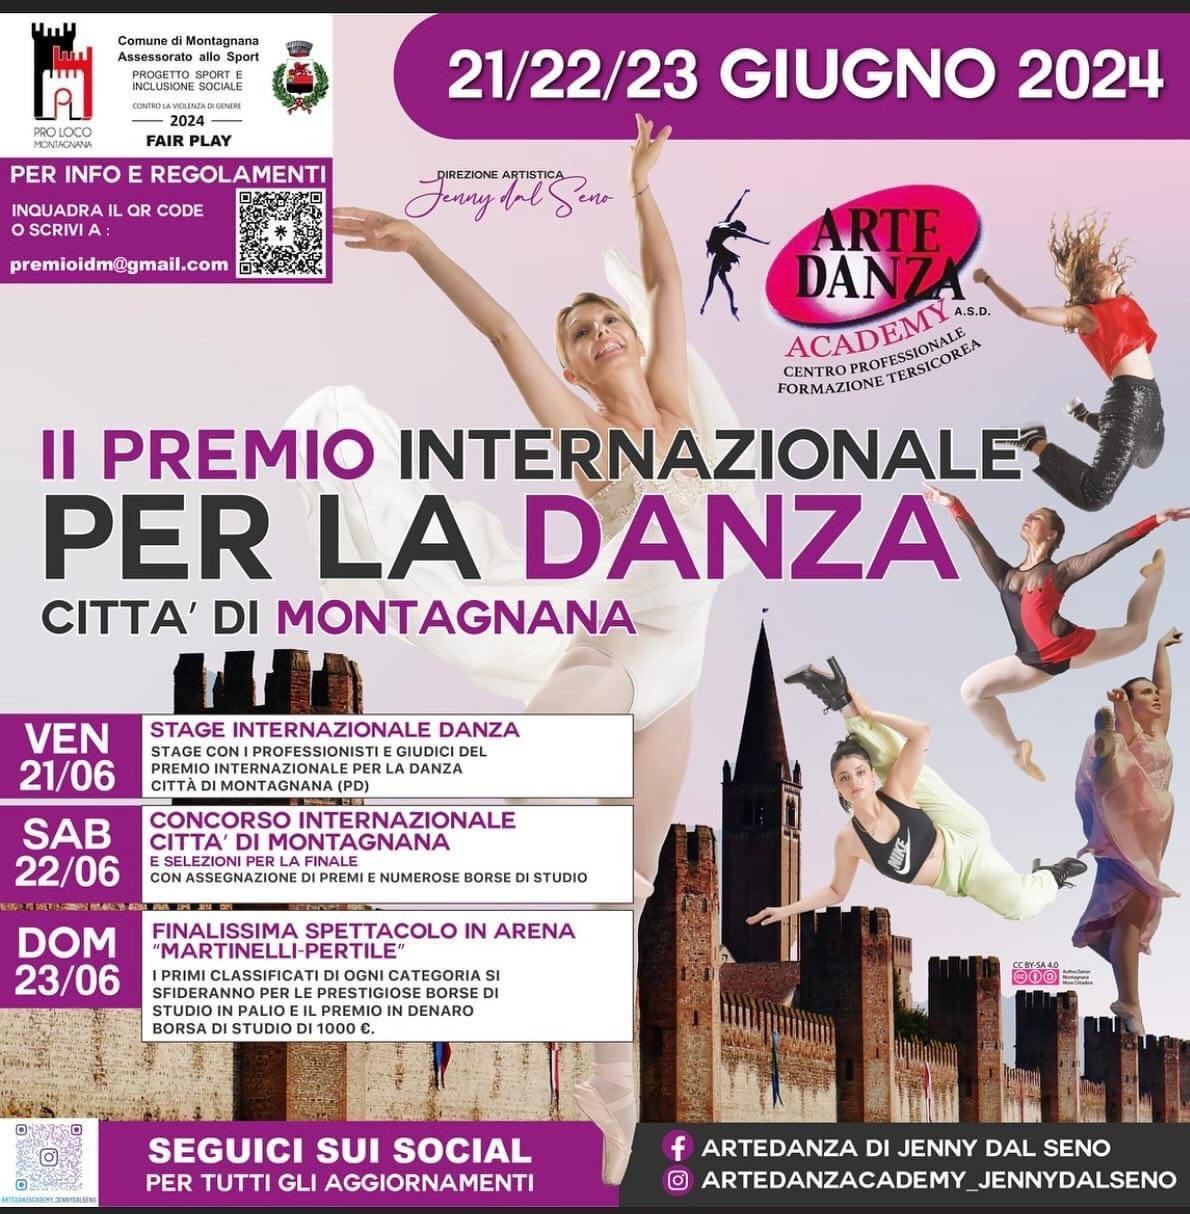 II Premio Internazionale per la Danza - Città di Montagnana 